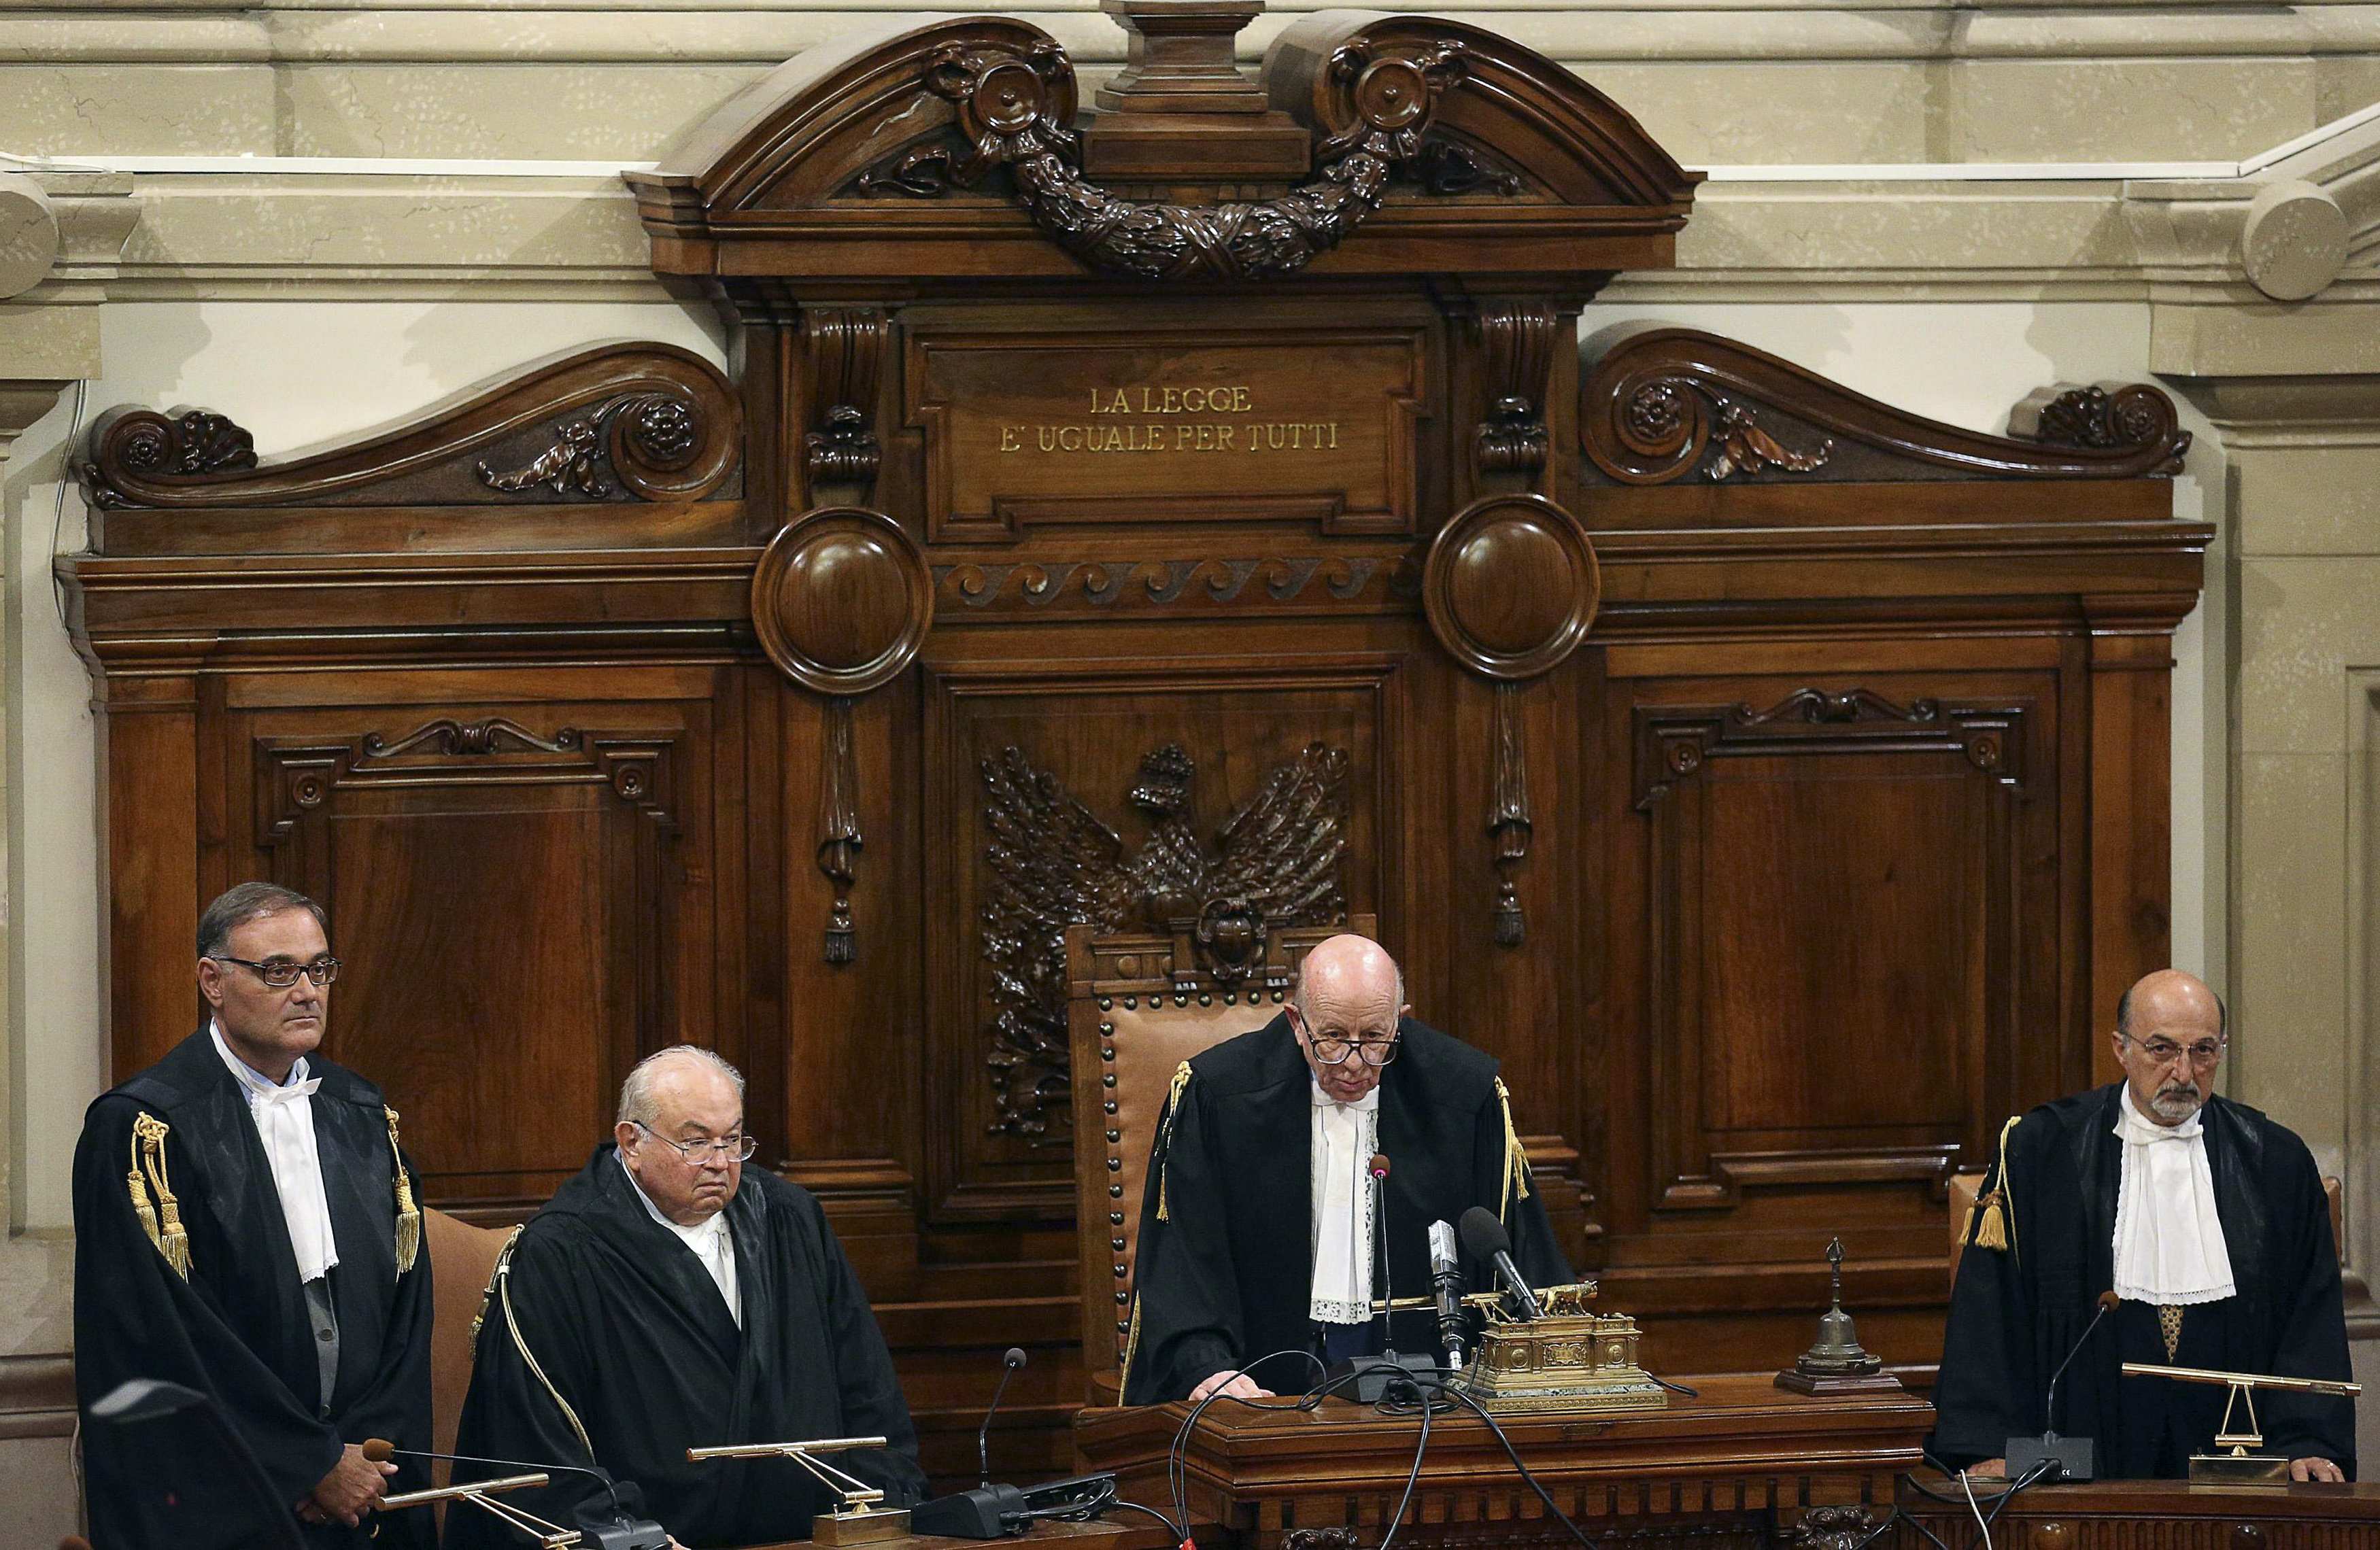 Η απόφαση του Αρείου Πάγου να επικυρώσει την καταδίκη του Μπερλουσκόνι προκαλεί αναταράξεις στο πολιτικό σκηνικό της Ιταλίας - ΦΩΤΟΓΡΑΦΙΑ REUTERS